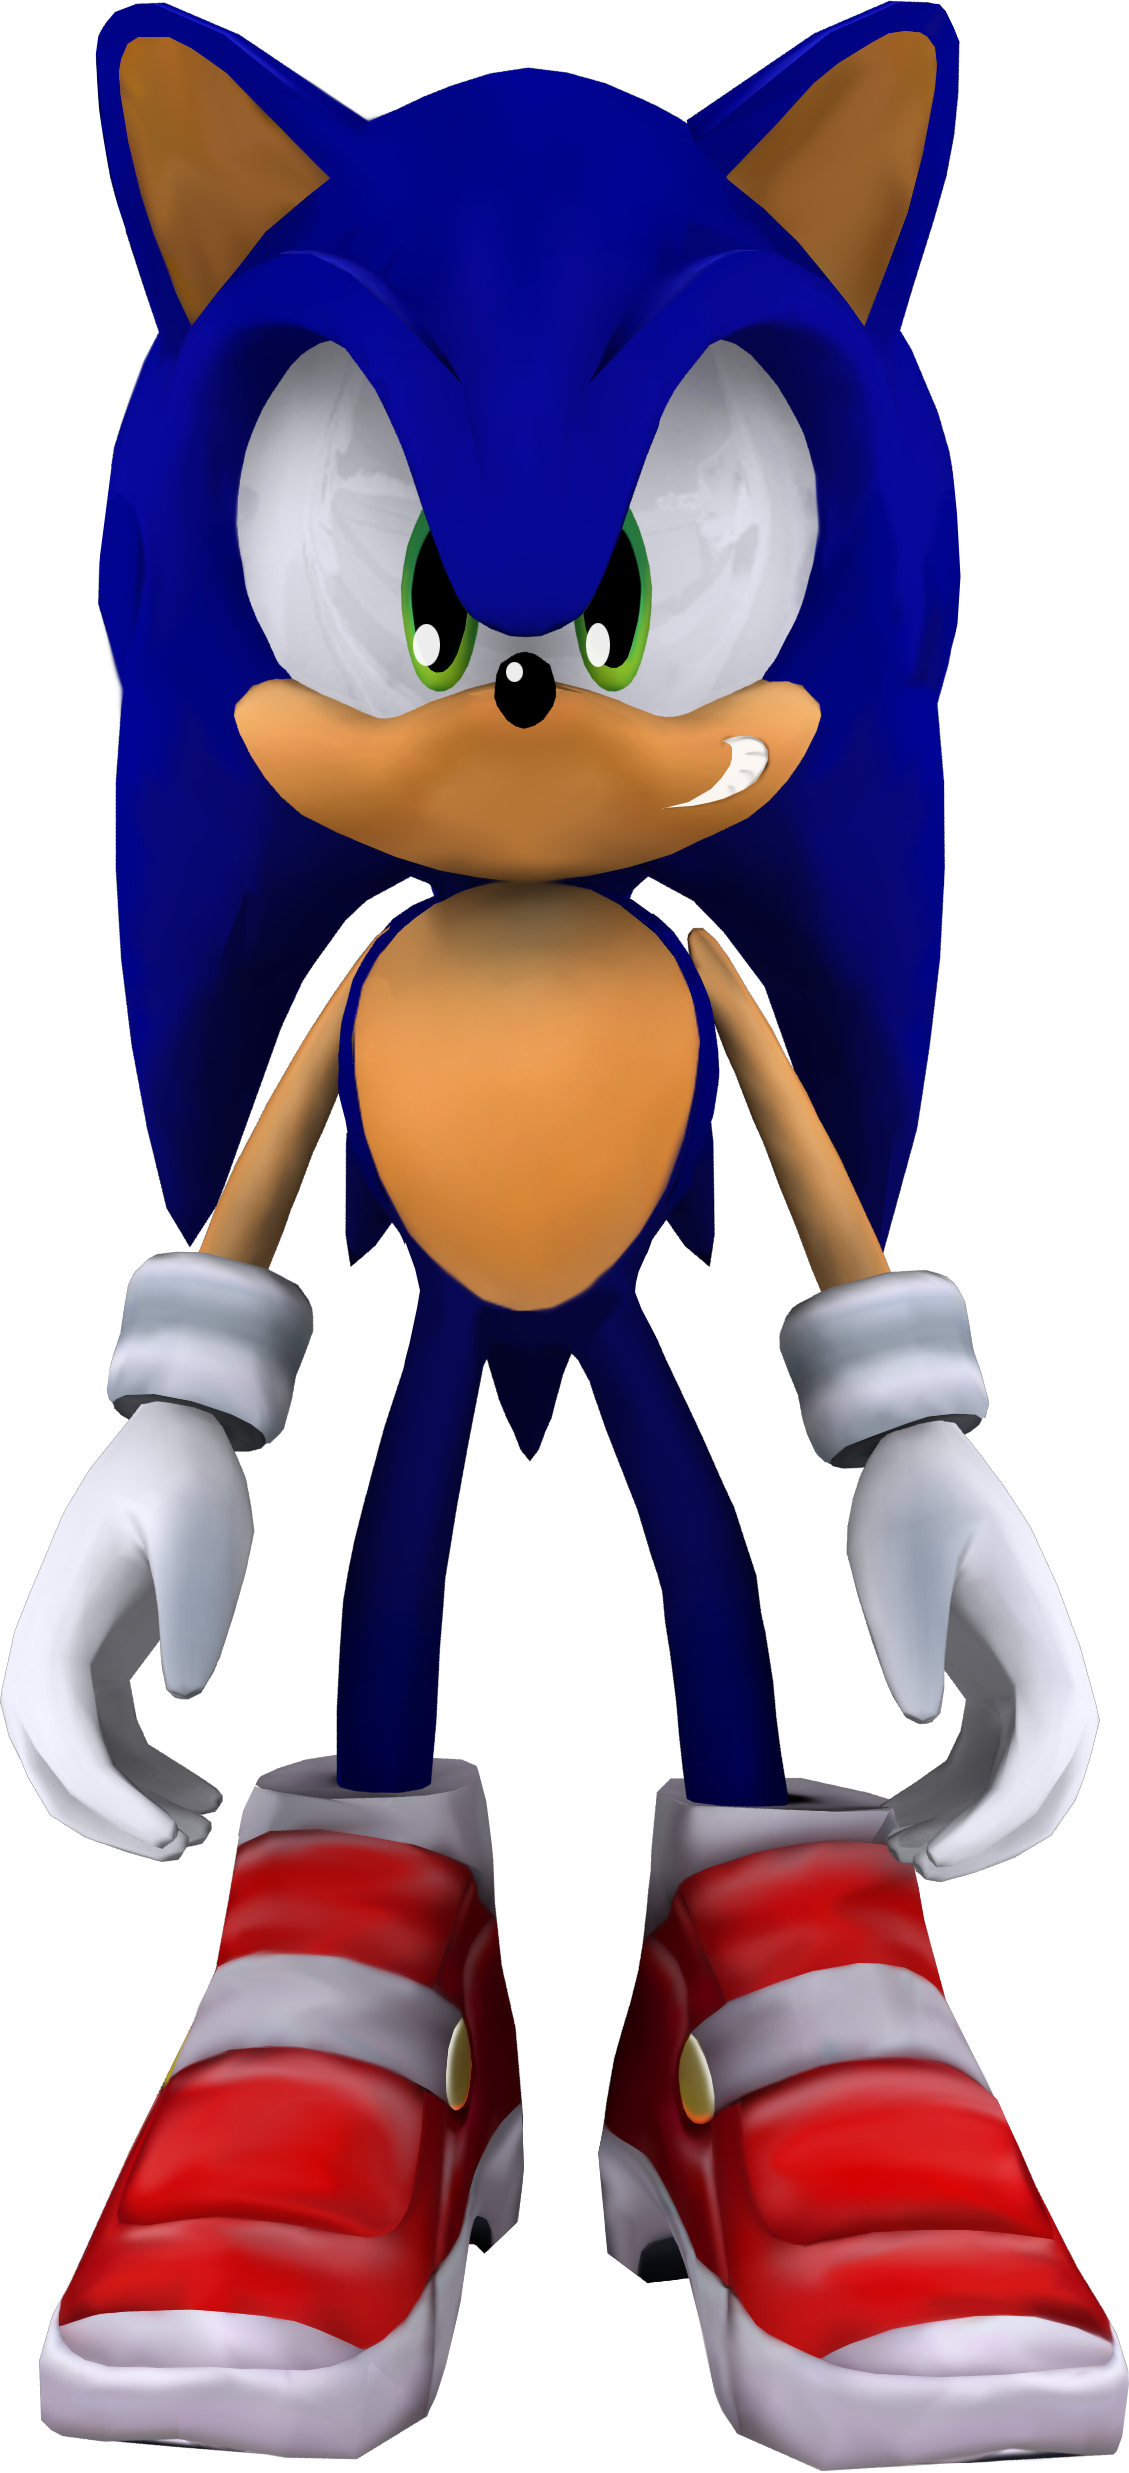 Sonic The Hedgehog By Itshelias94 - Sonic Adventure 2 Sonic Model (1129x2473)